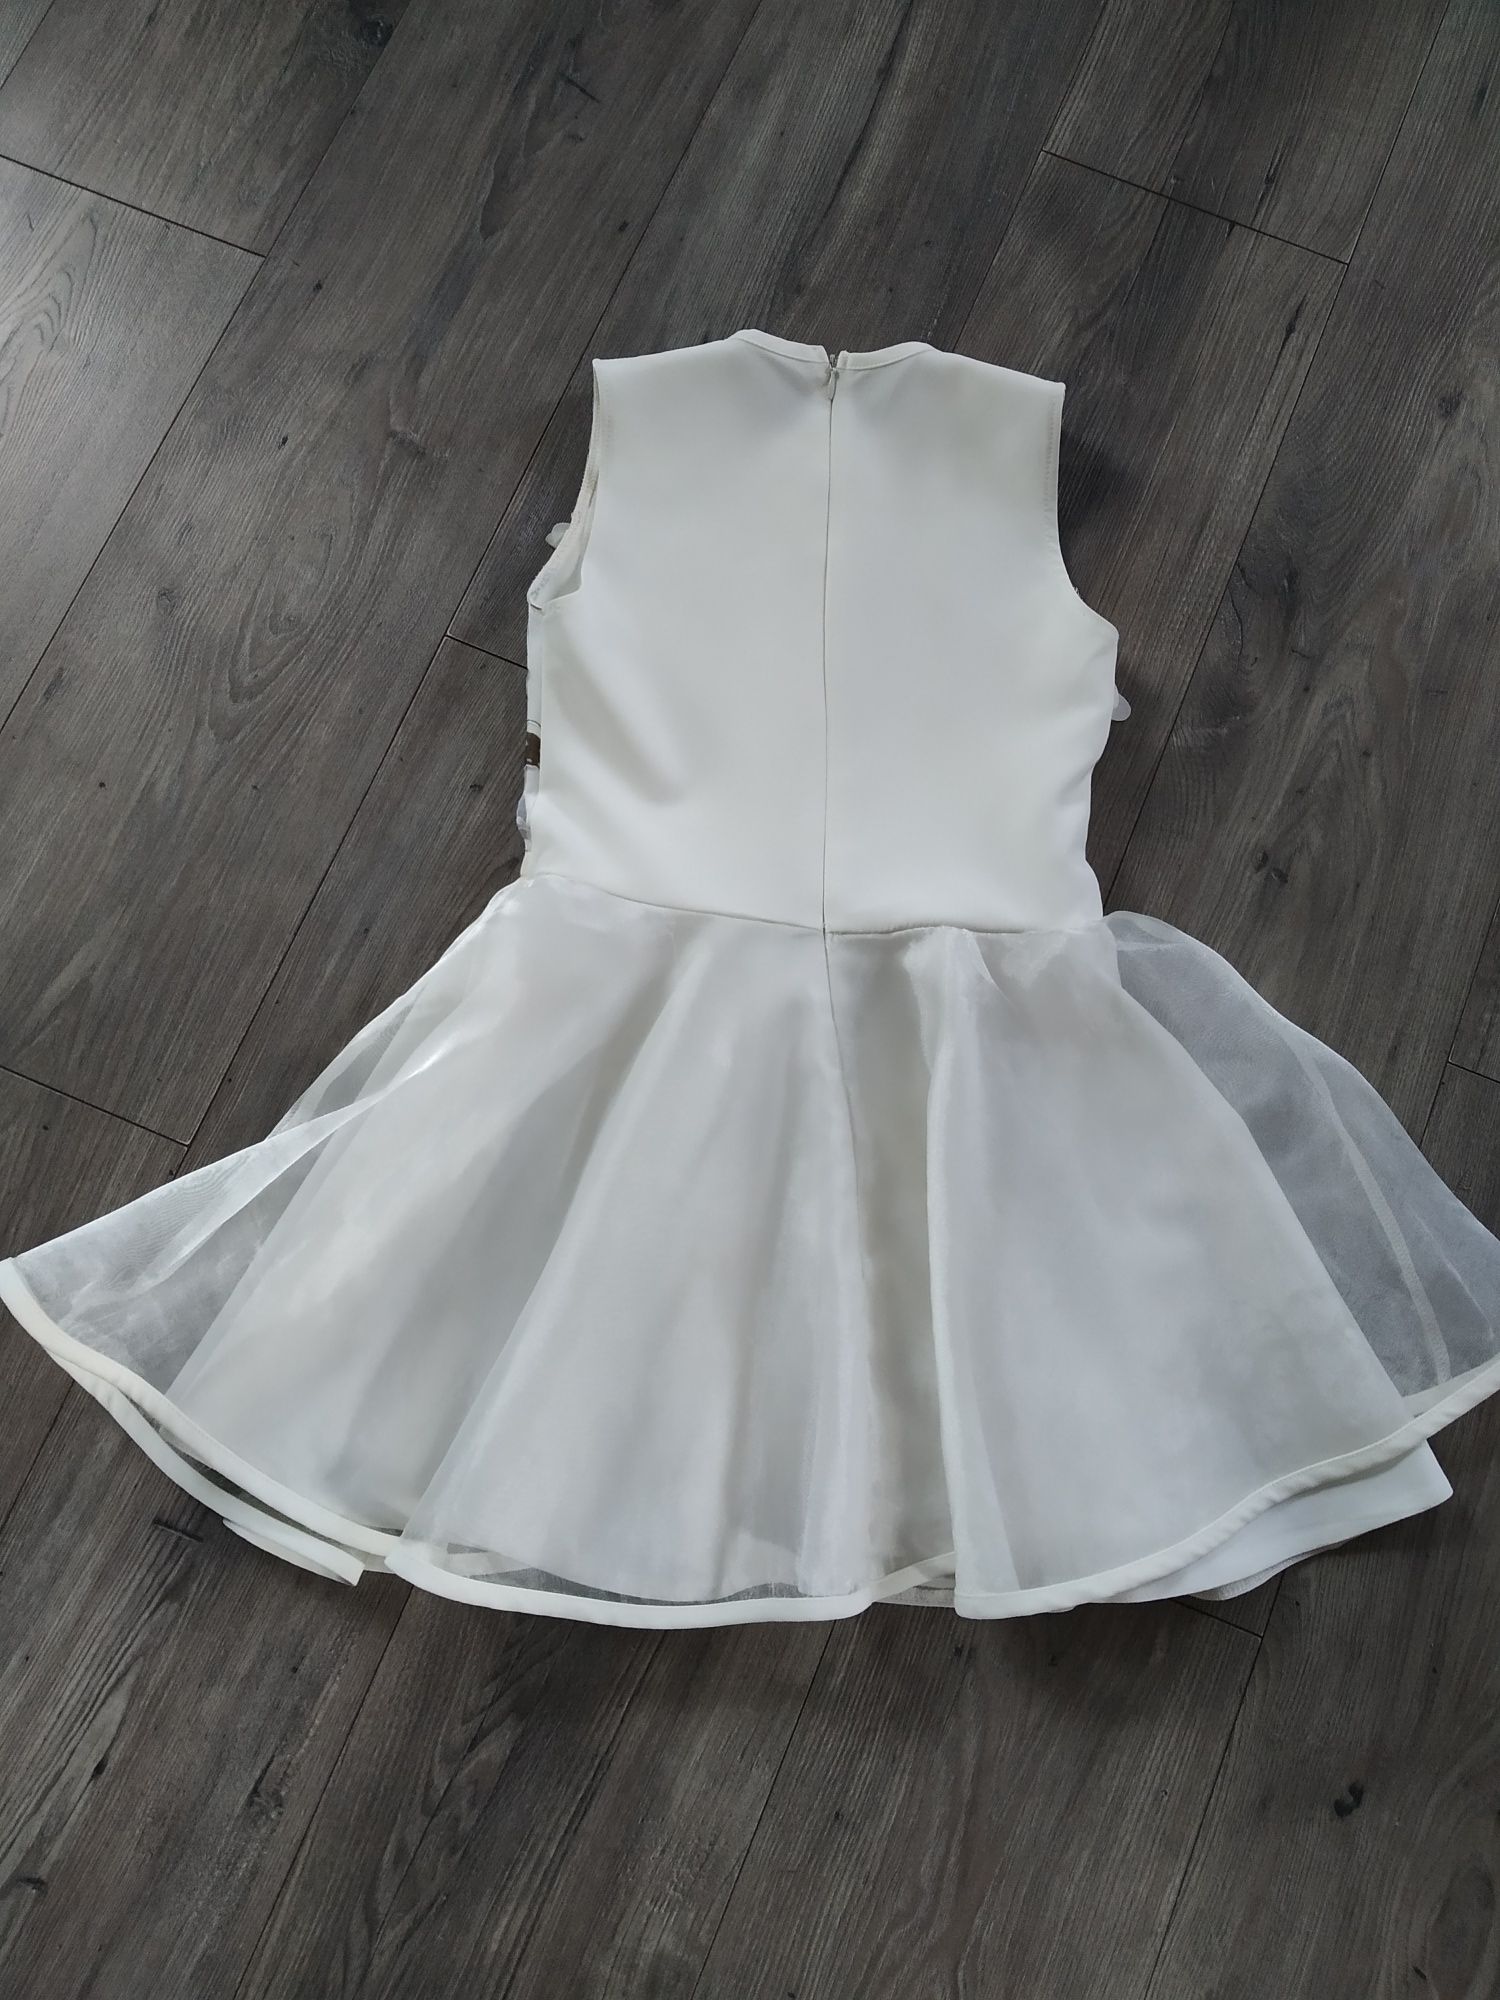 Sukienka elegancka rozm. 134 kremowy biały